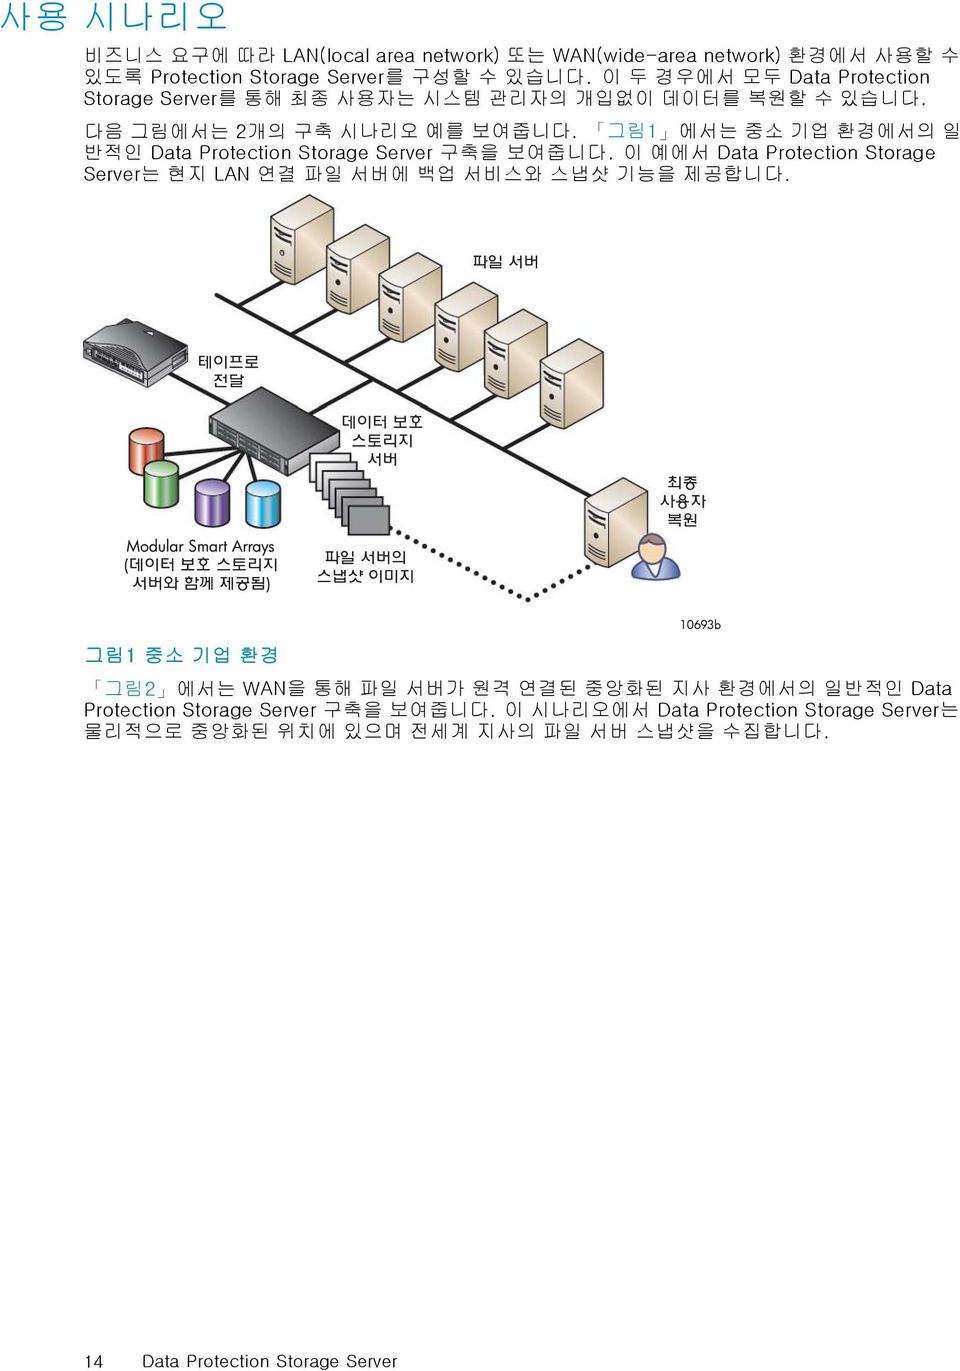 그림1 에서는 중소 기업 환경에서의 일 반적인 Data Protection Storage Server 구축을 보여줍니다. 이 예에서 Data Protection Storage Server는 현지 LAN 연결 파일 서버에 백업 서비스와 스냅샷 기능을 제공합니다.